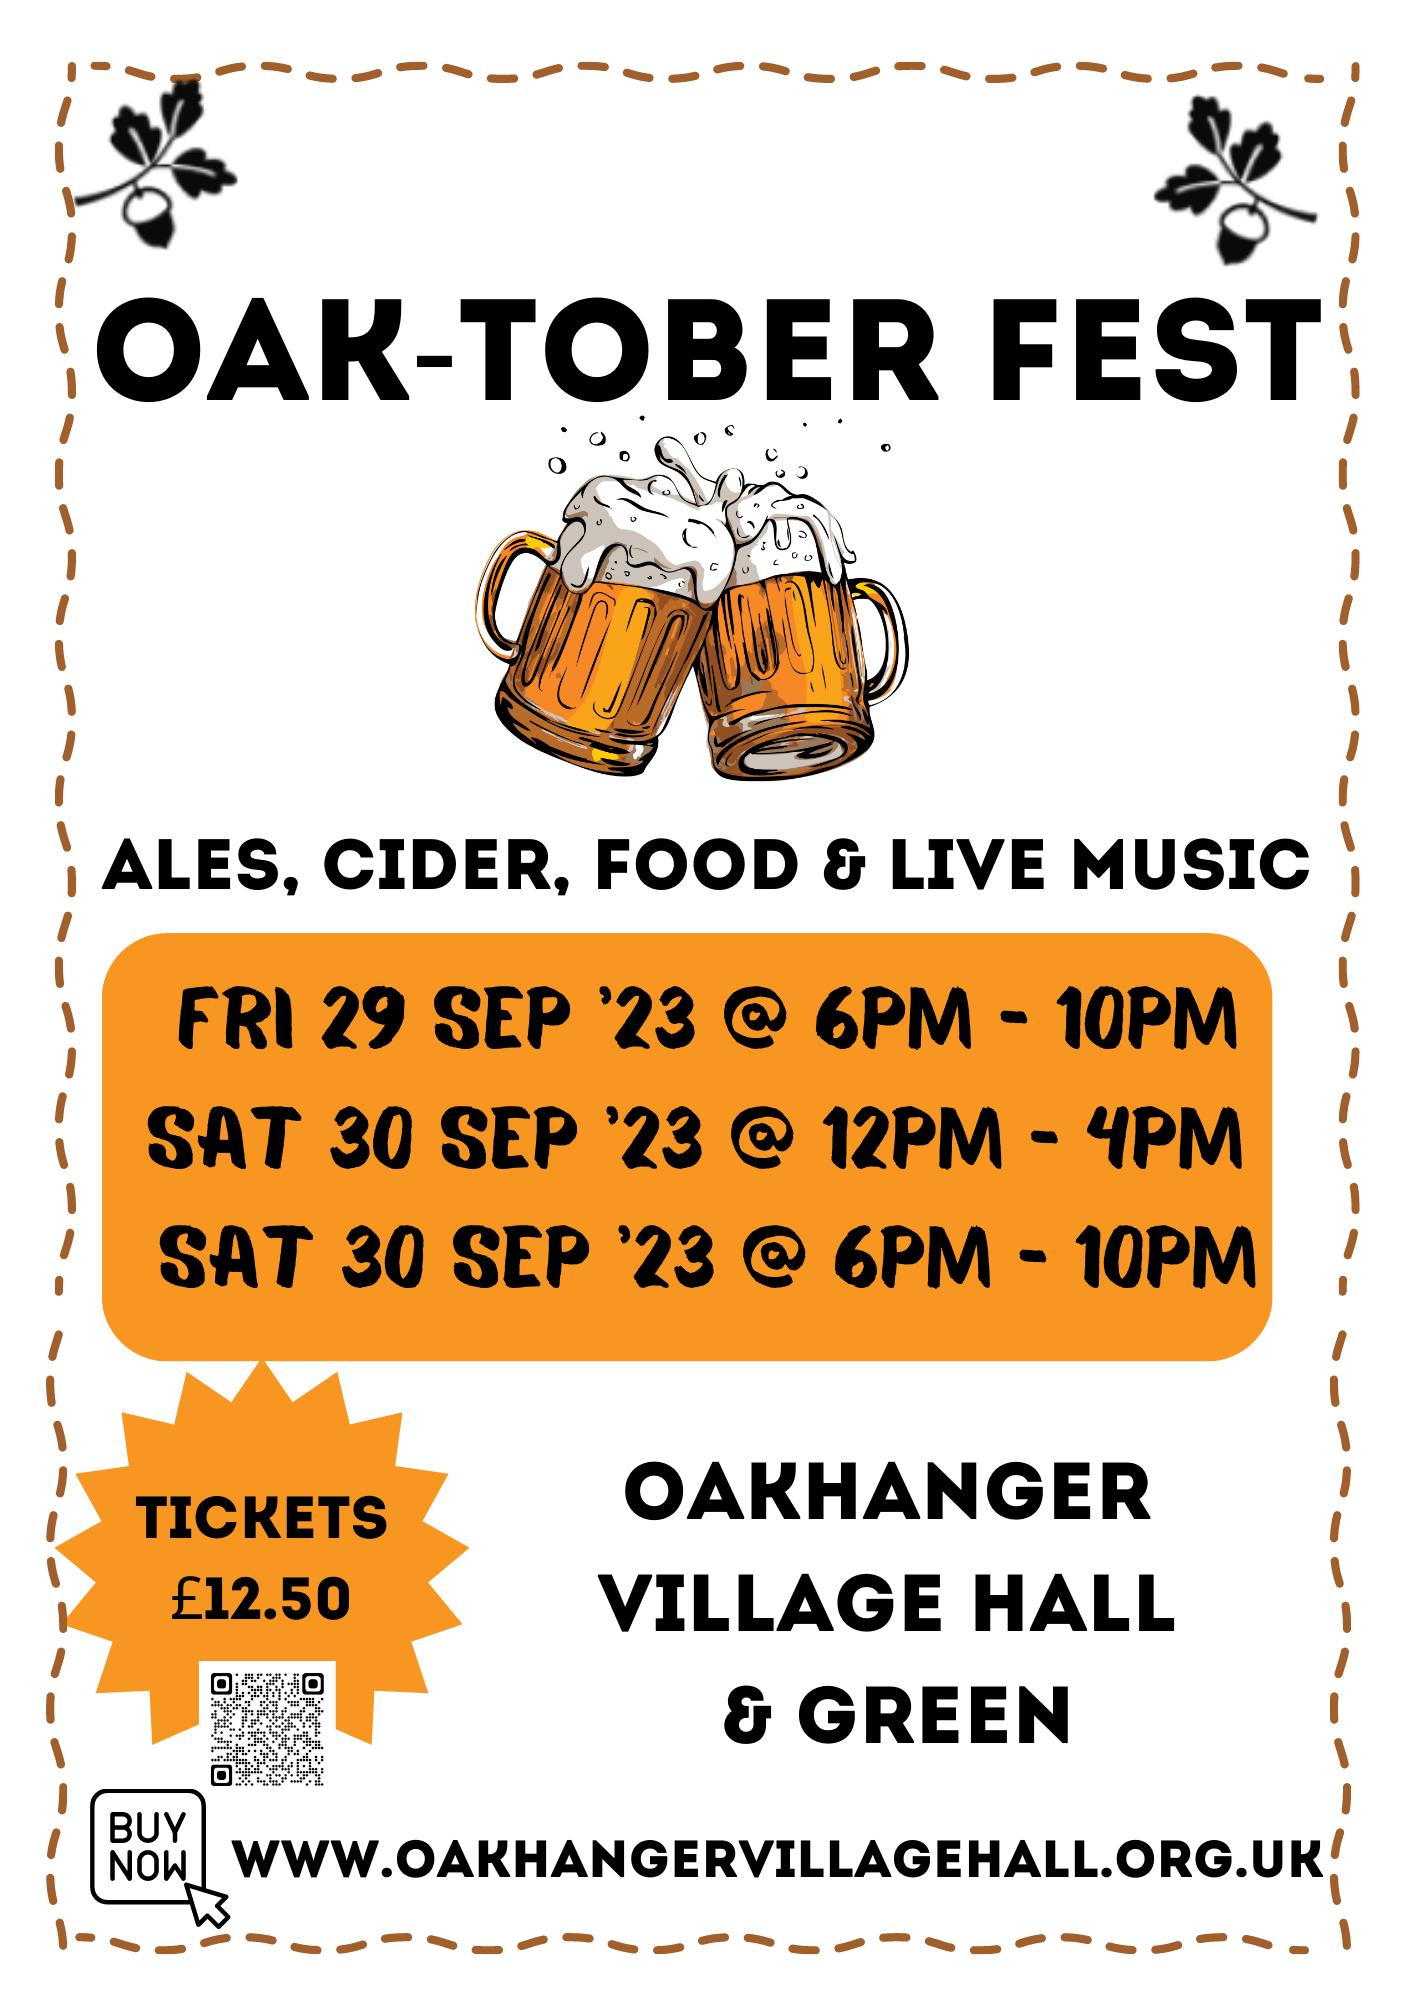 Oakhanger Village Hall Oaktober Fest